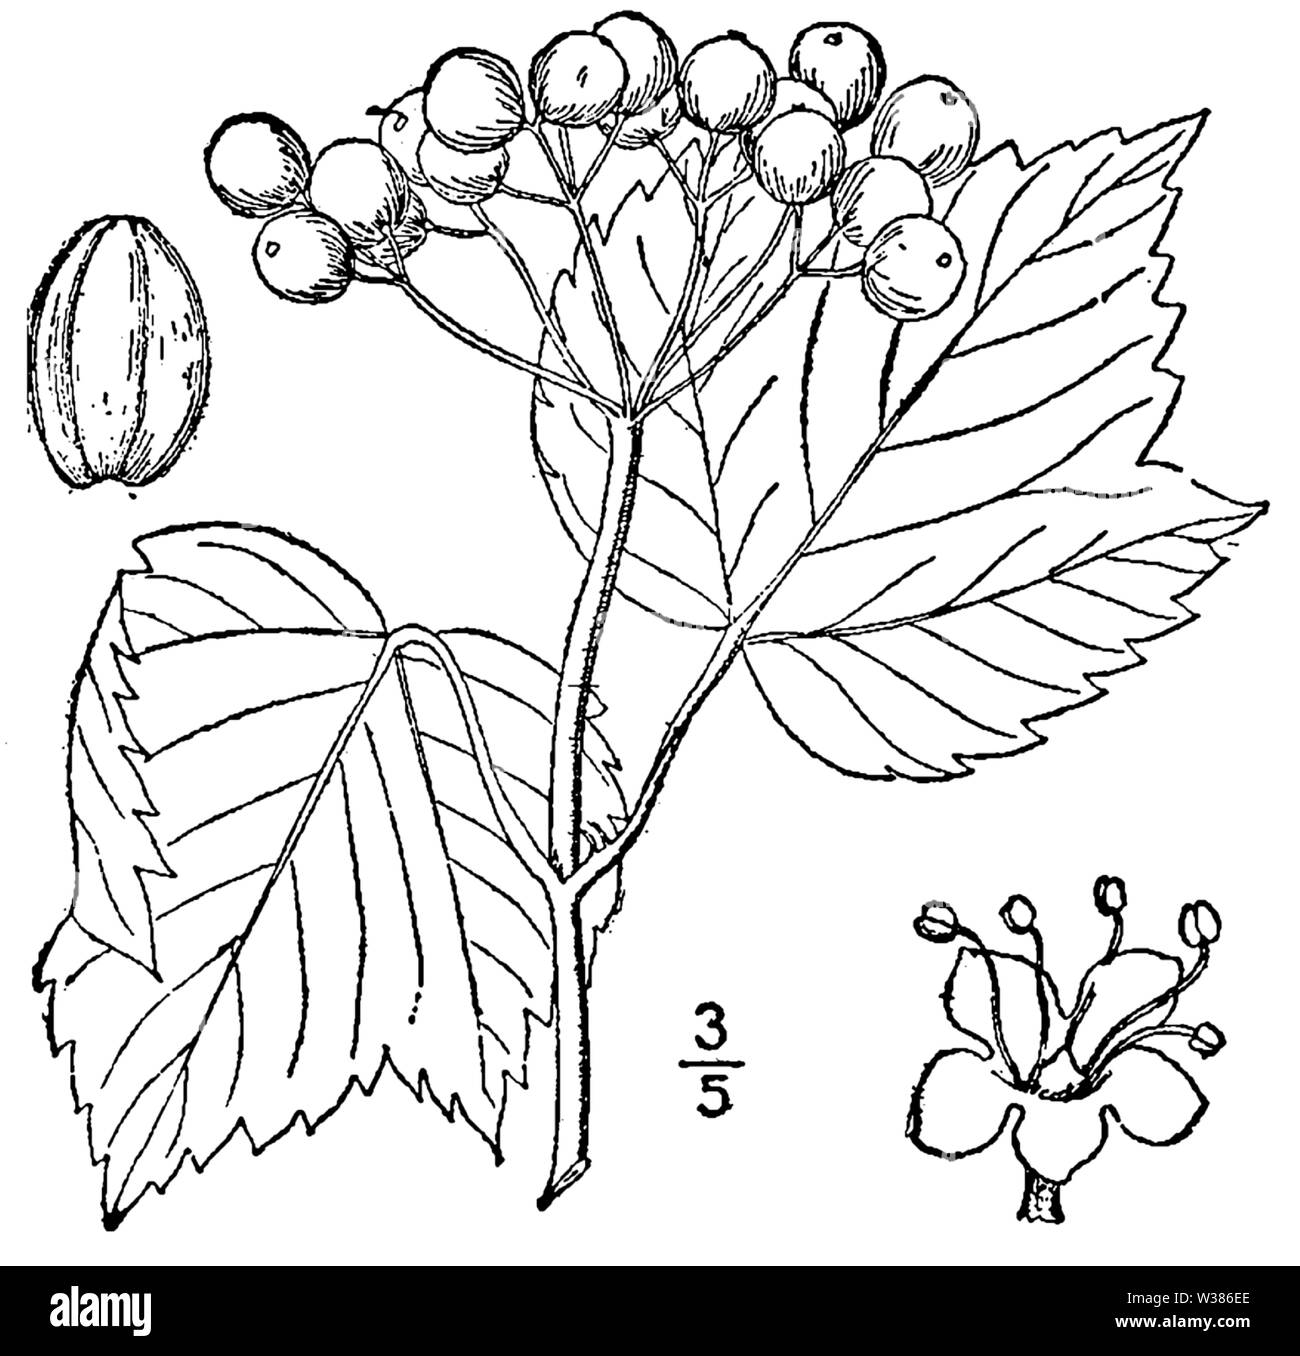 Форма листа калины. Строение Калина обыкновенная. Viburnum Acerifolium. Калина обыкновенная раскраска. Лист калины рисунок.